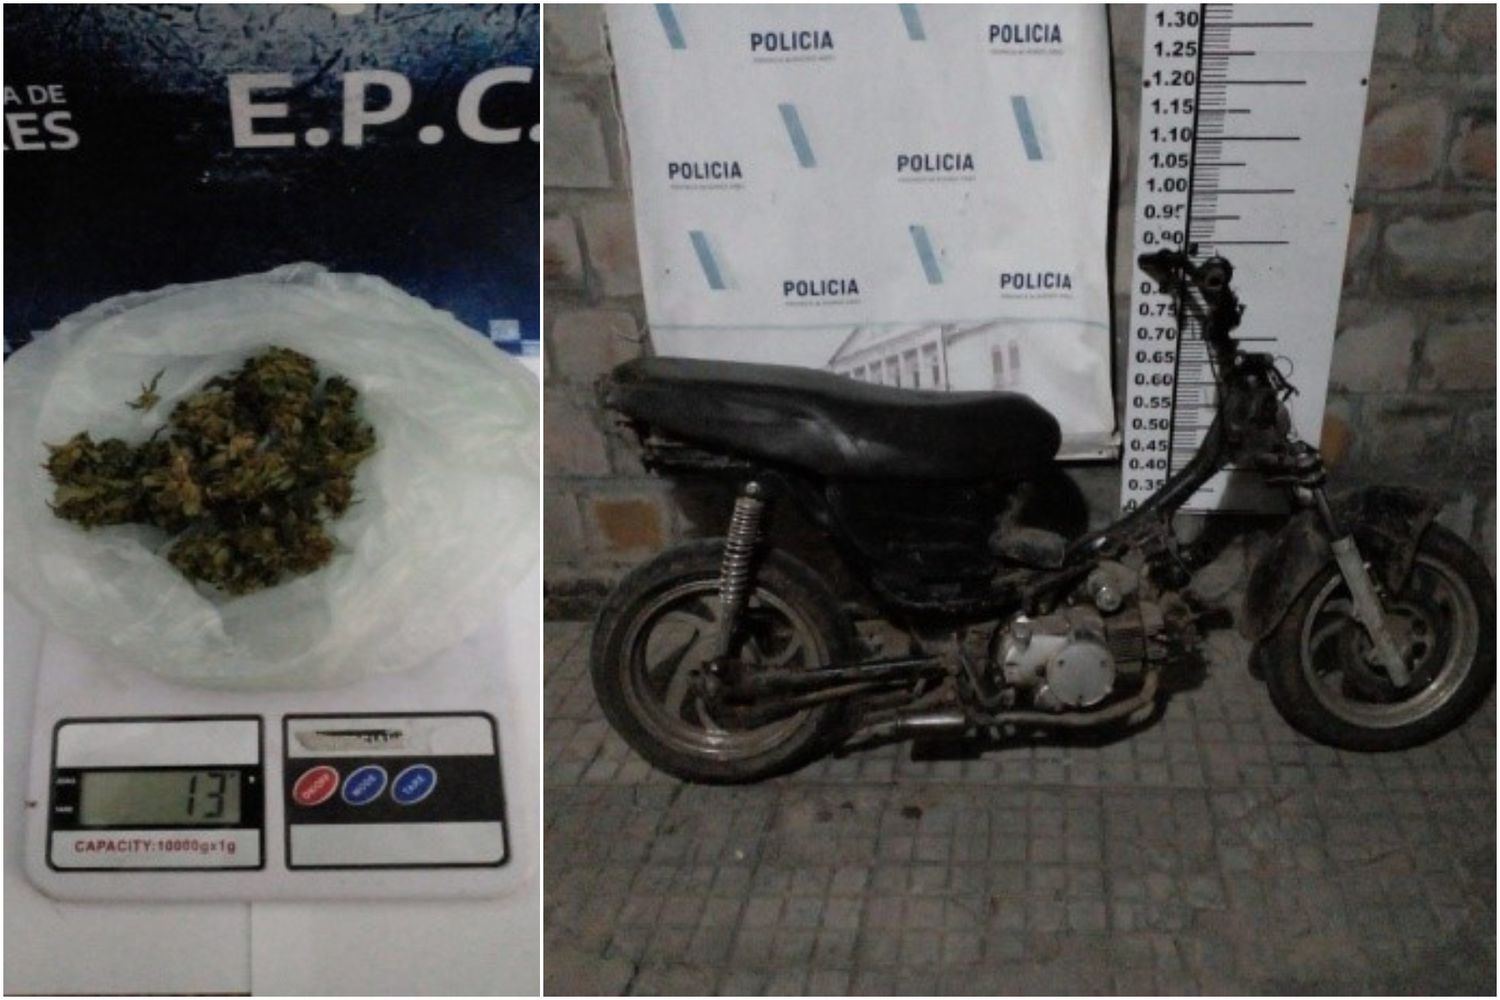 La moto y la marihuana secuestradas por la policía.